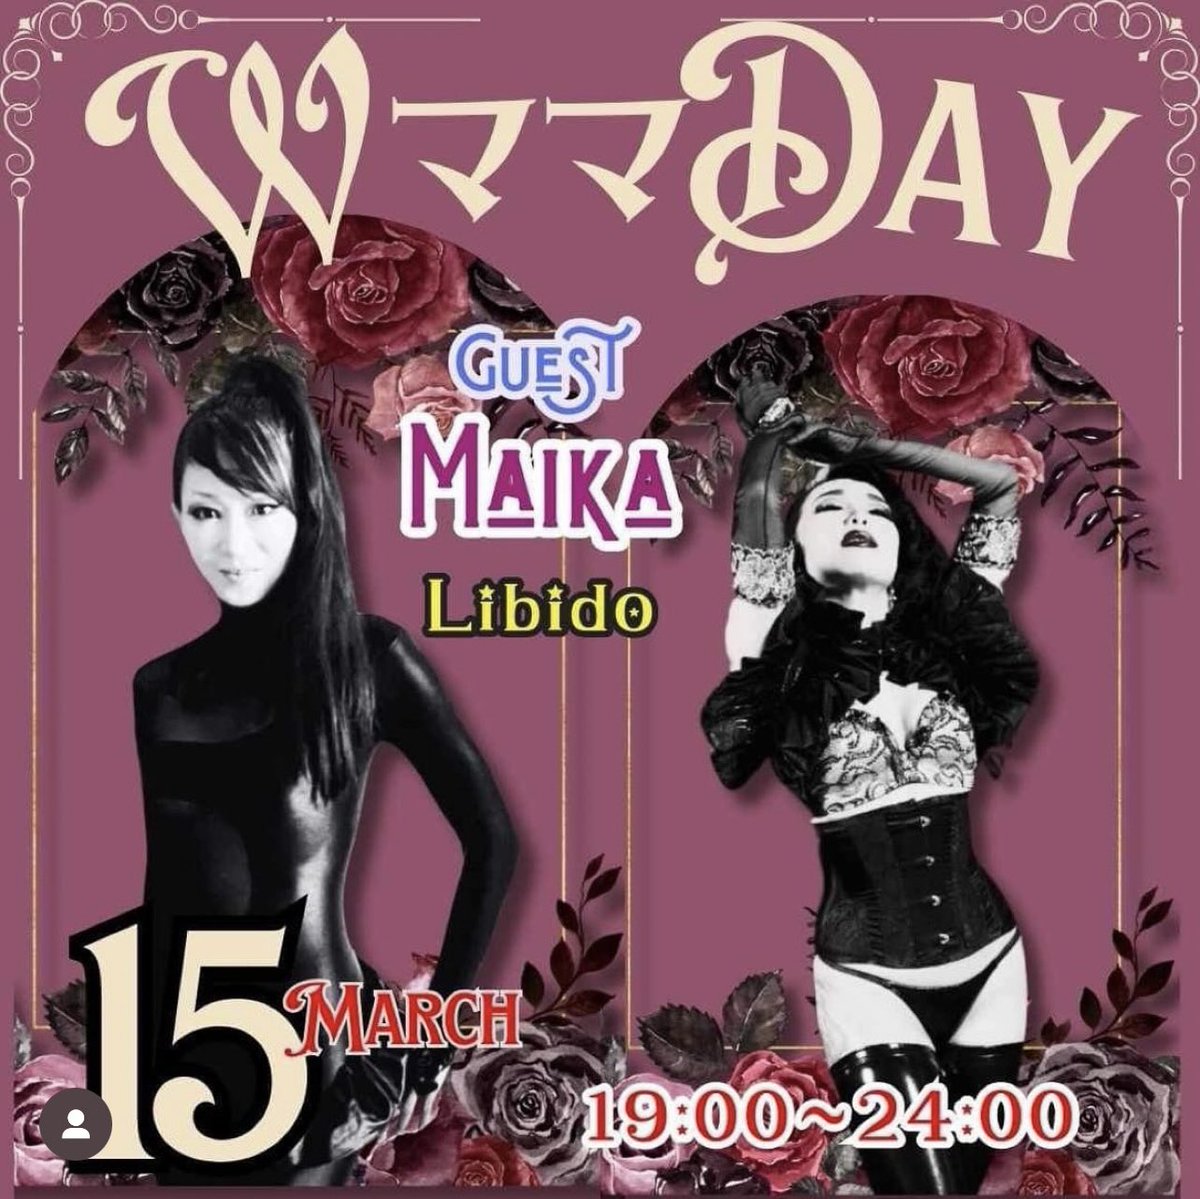 ３月15日(金)19時より、Libidoオーガナイザーの1人Maikaがバーレスクダンサーの女神、Maicoさんの素敵なバーにおります。ぜひお気軽にお立ち寄りください🌹
【Salon de Tsubaki】Wママday 
Guest : Maika - Libido M&J
2ー12ー2 Shinjuku 3F
cabaretdecirque.wixsite.com/tsubaki
#fetish #libido_mj